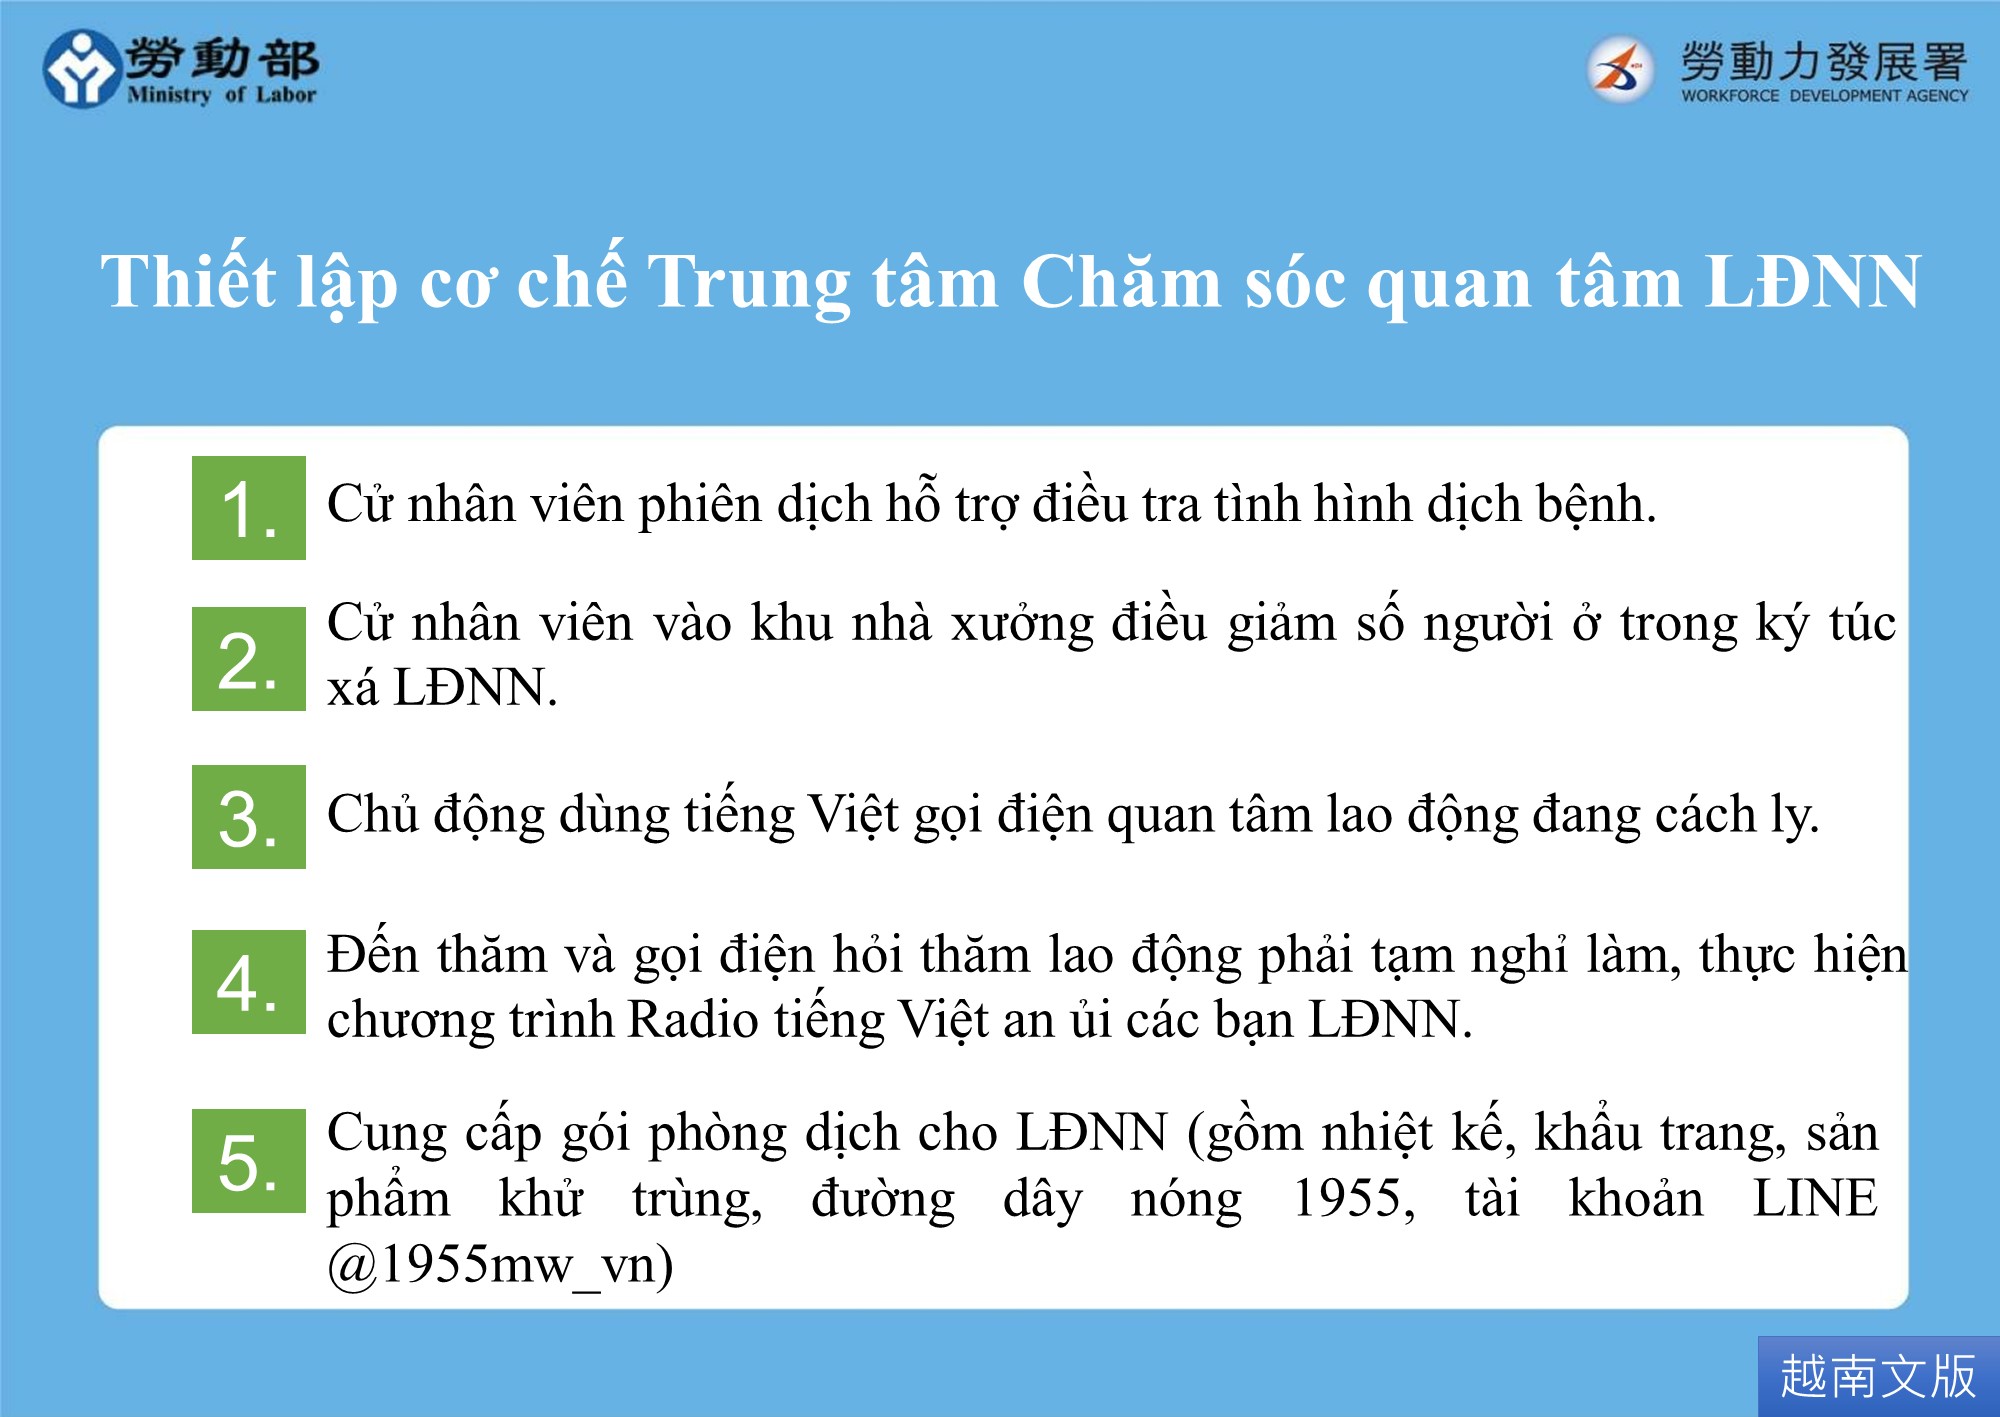 圖卡-建立移工關懷中心機制-越南文